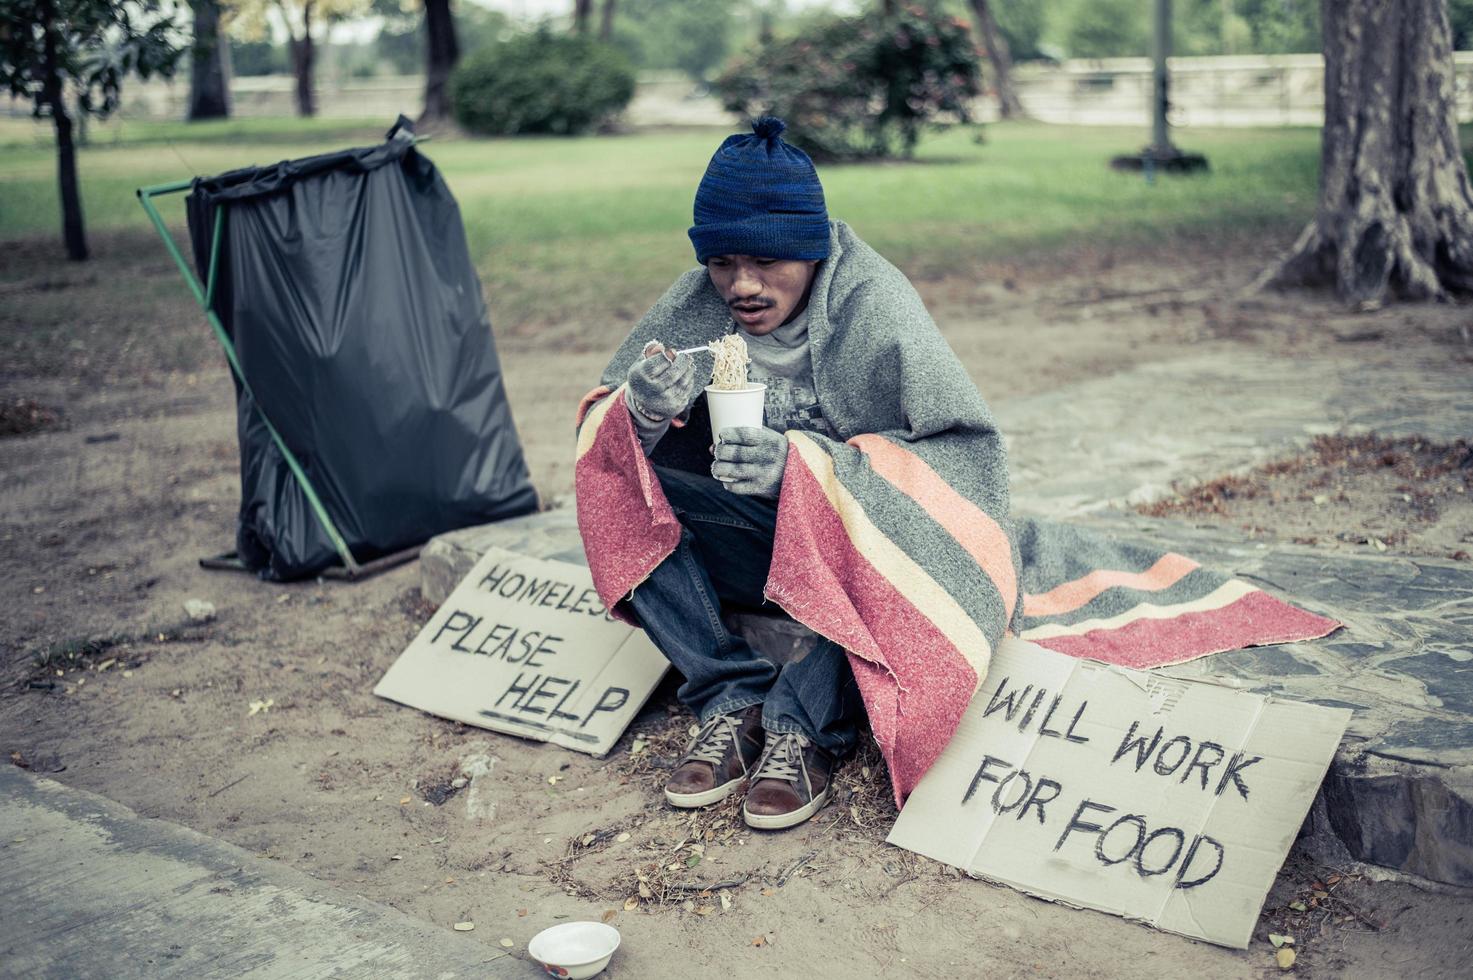 Hombre sin hogar envuelto en tela y comiendo fideos foto